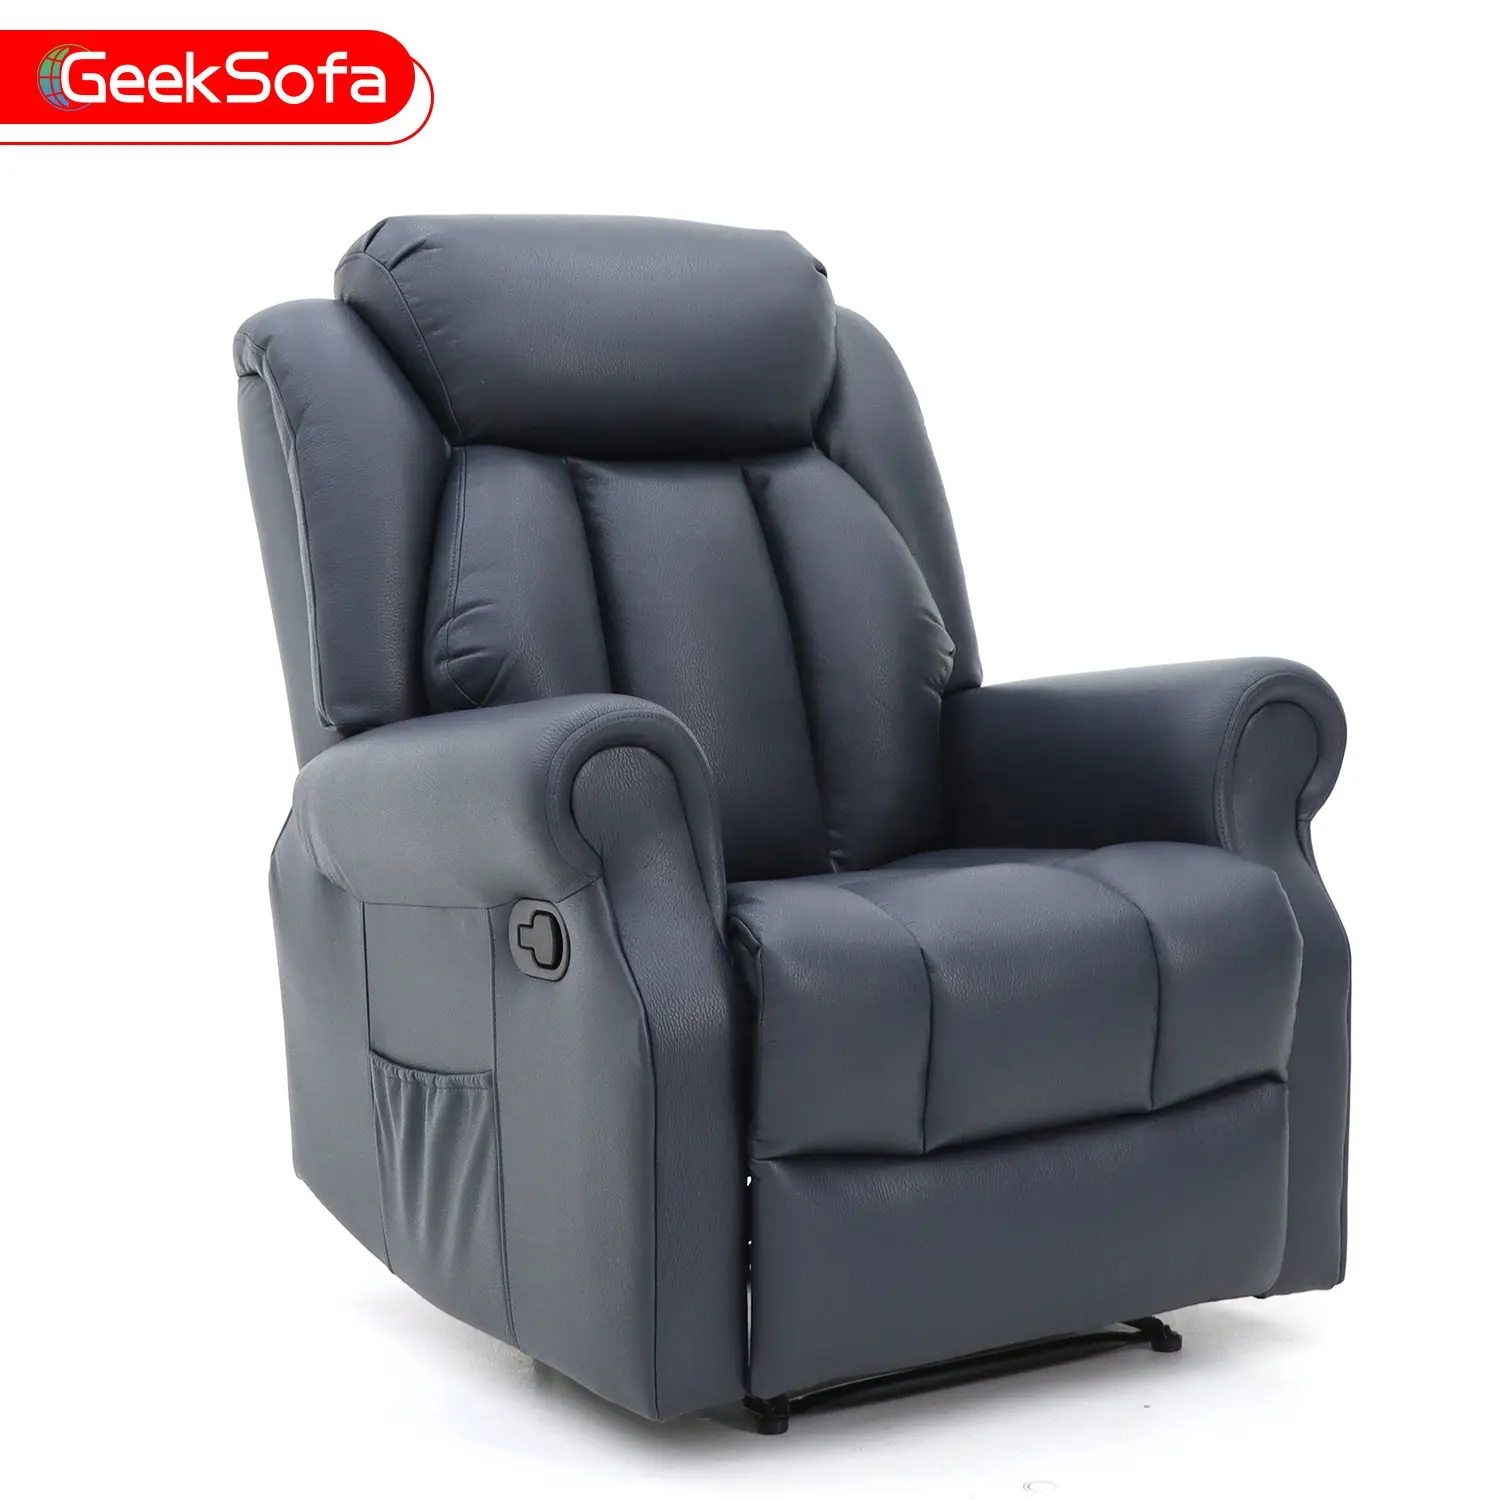 Geeksofa Modern Leather Manual Recliner Chair mit Massage und Wärme